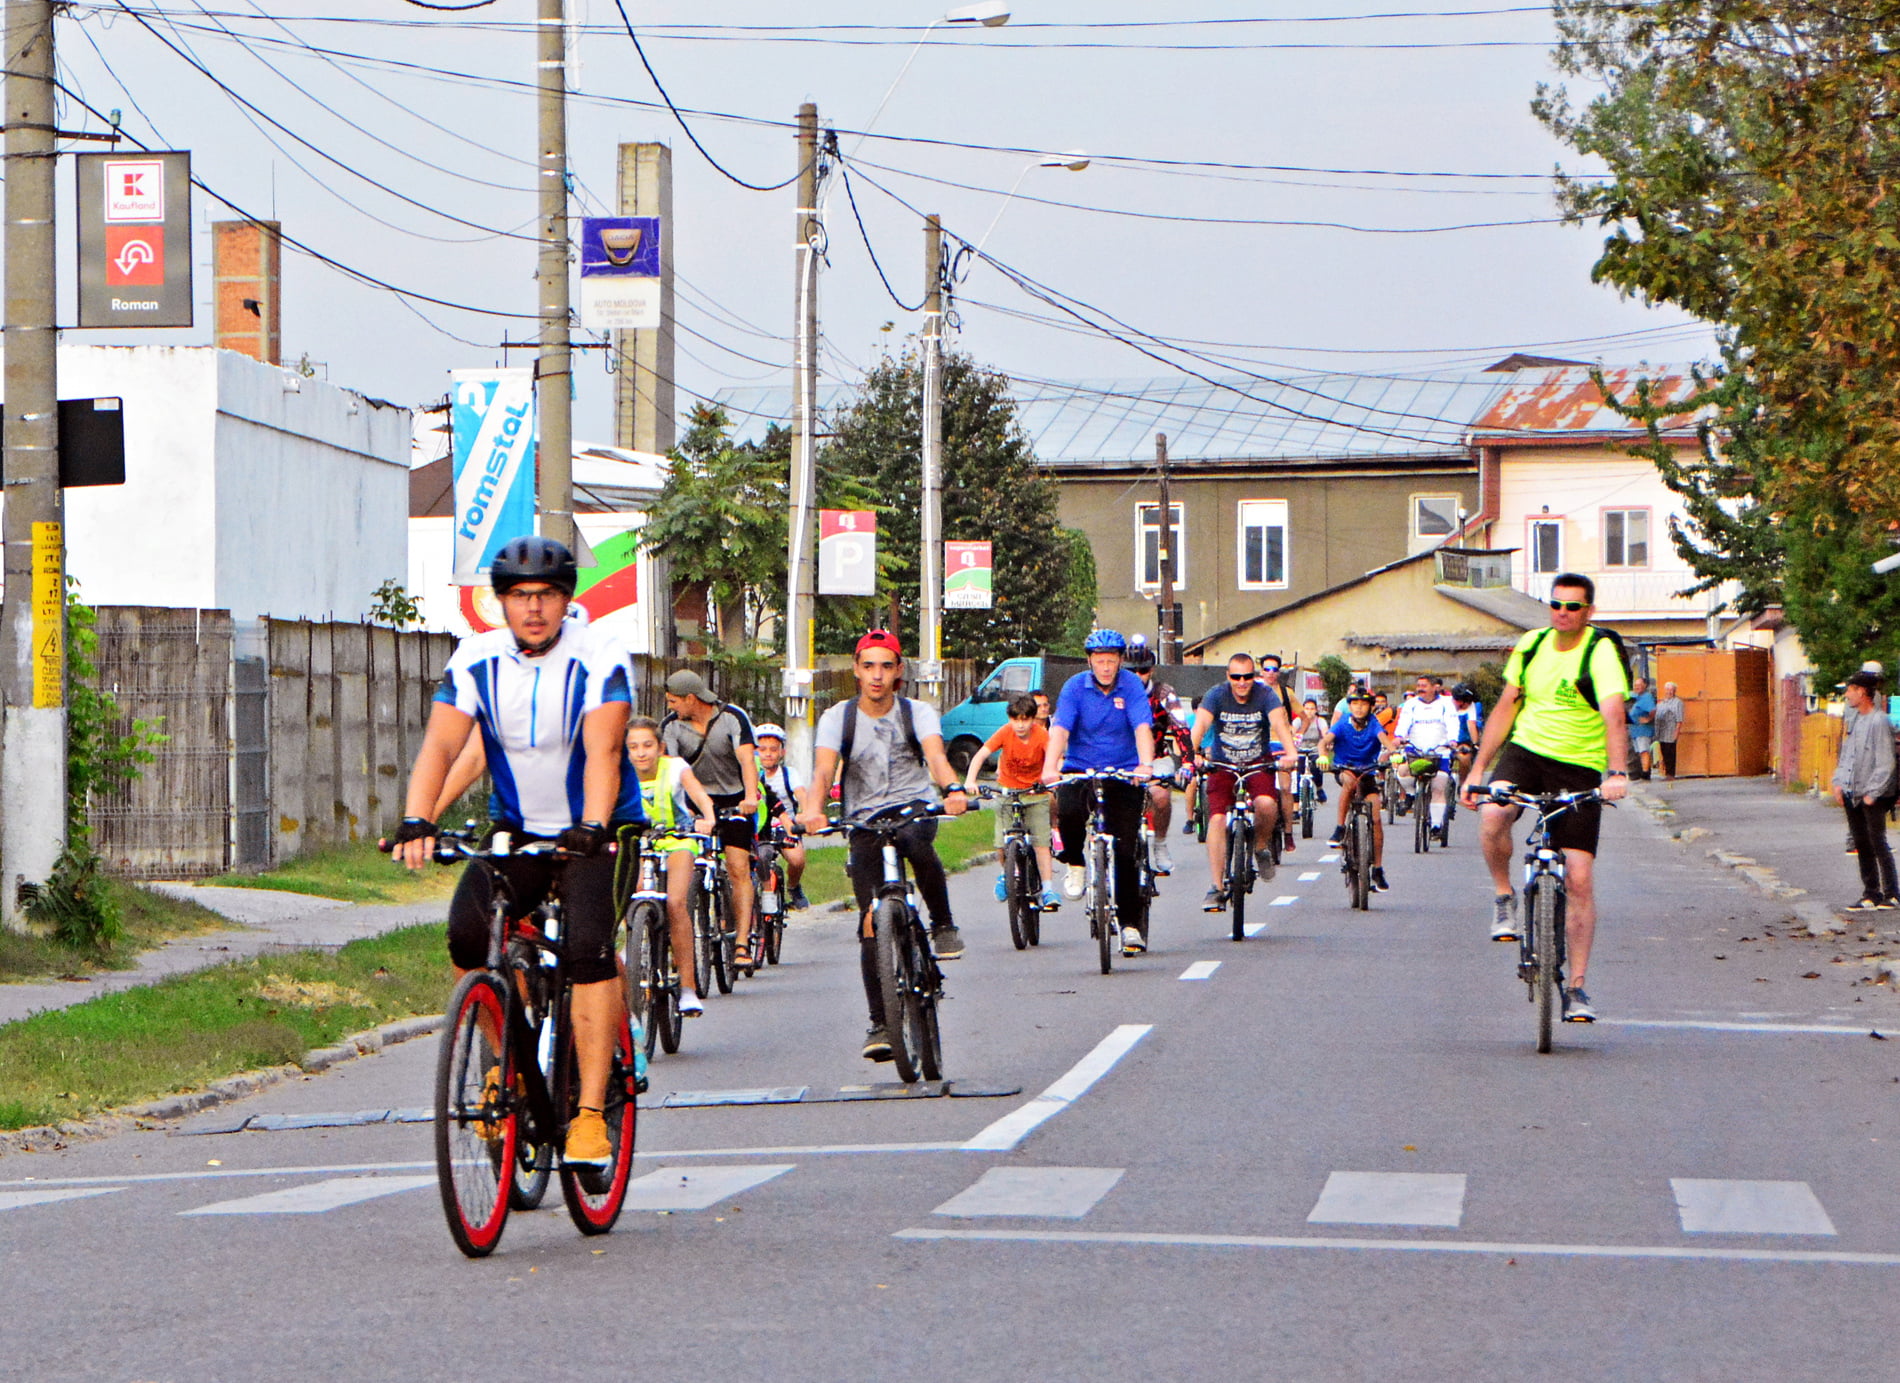 Circulație restricționată miercuri seară, pentru desfășurarea unui tur ciclist al Romanului